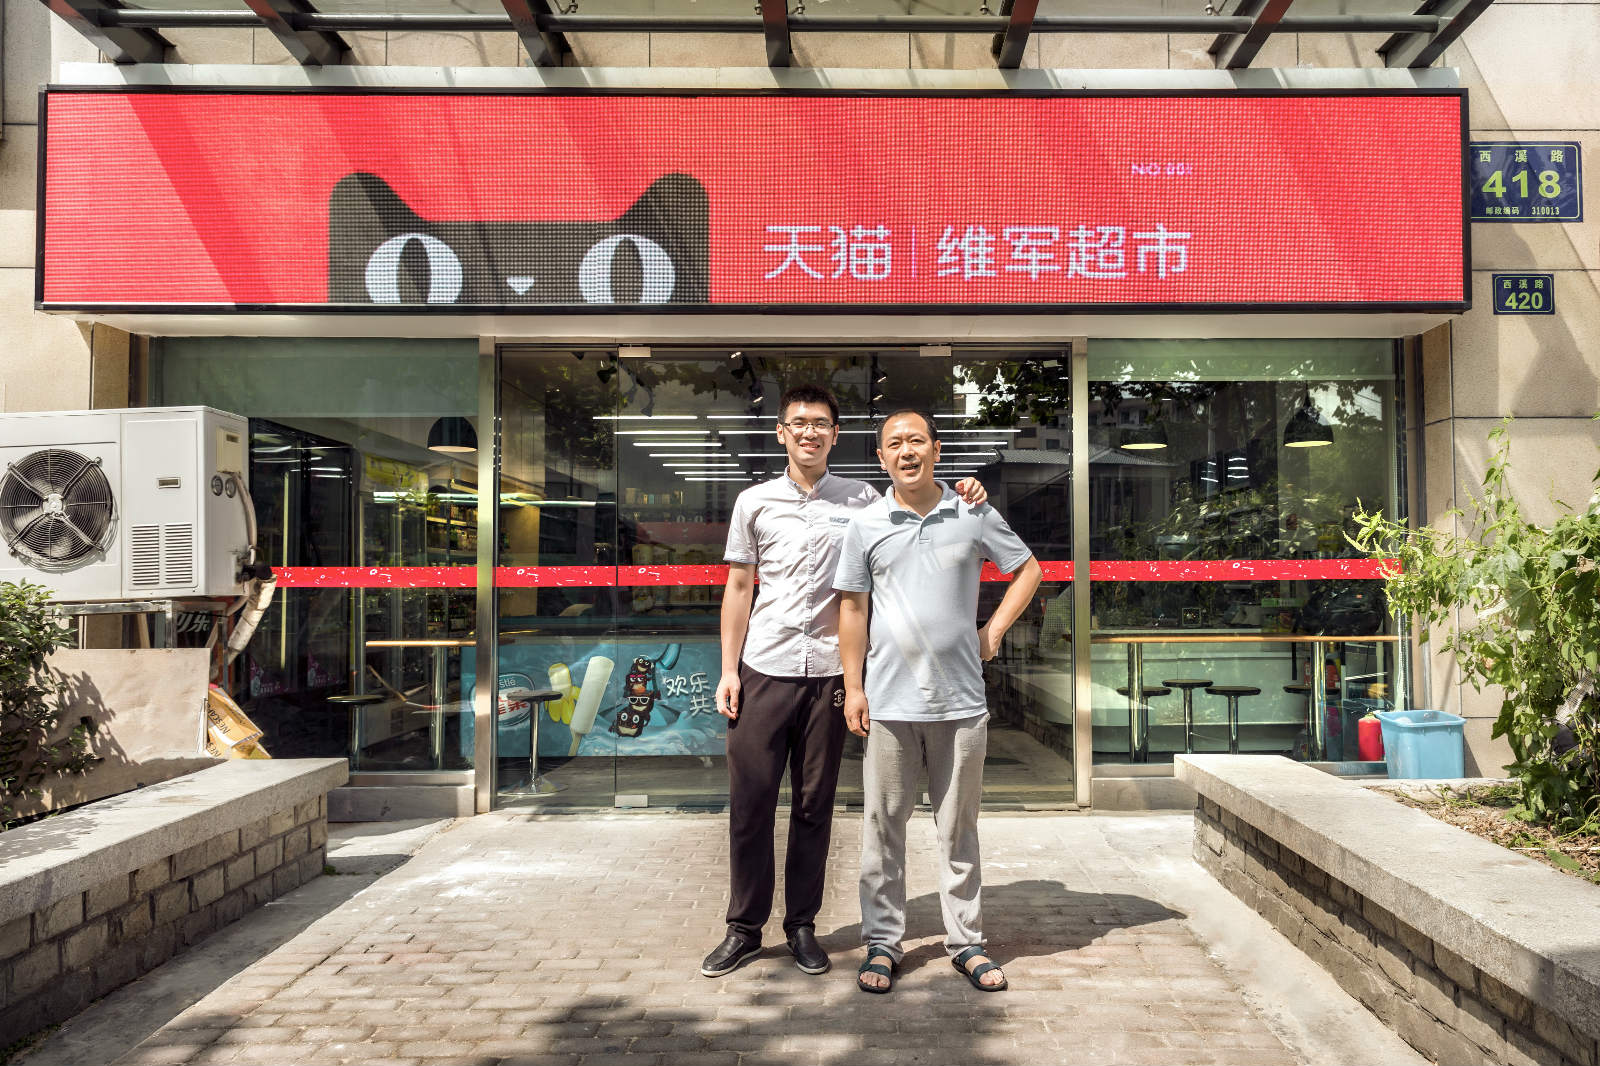 首家天猫小店落地杭州 年内全国打造10000家